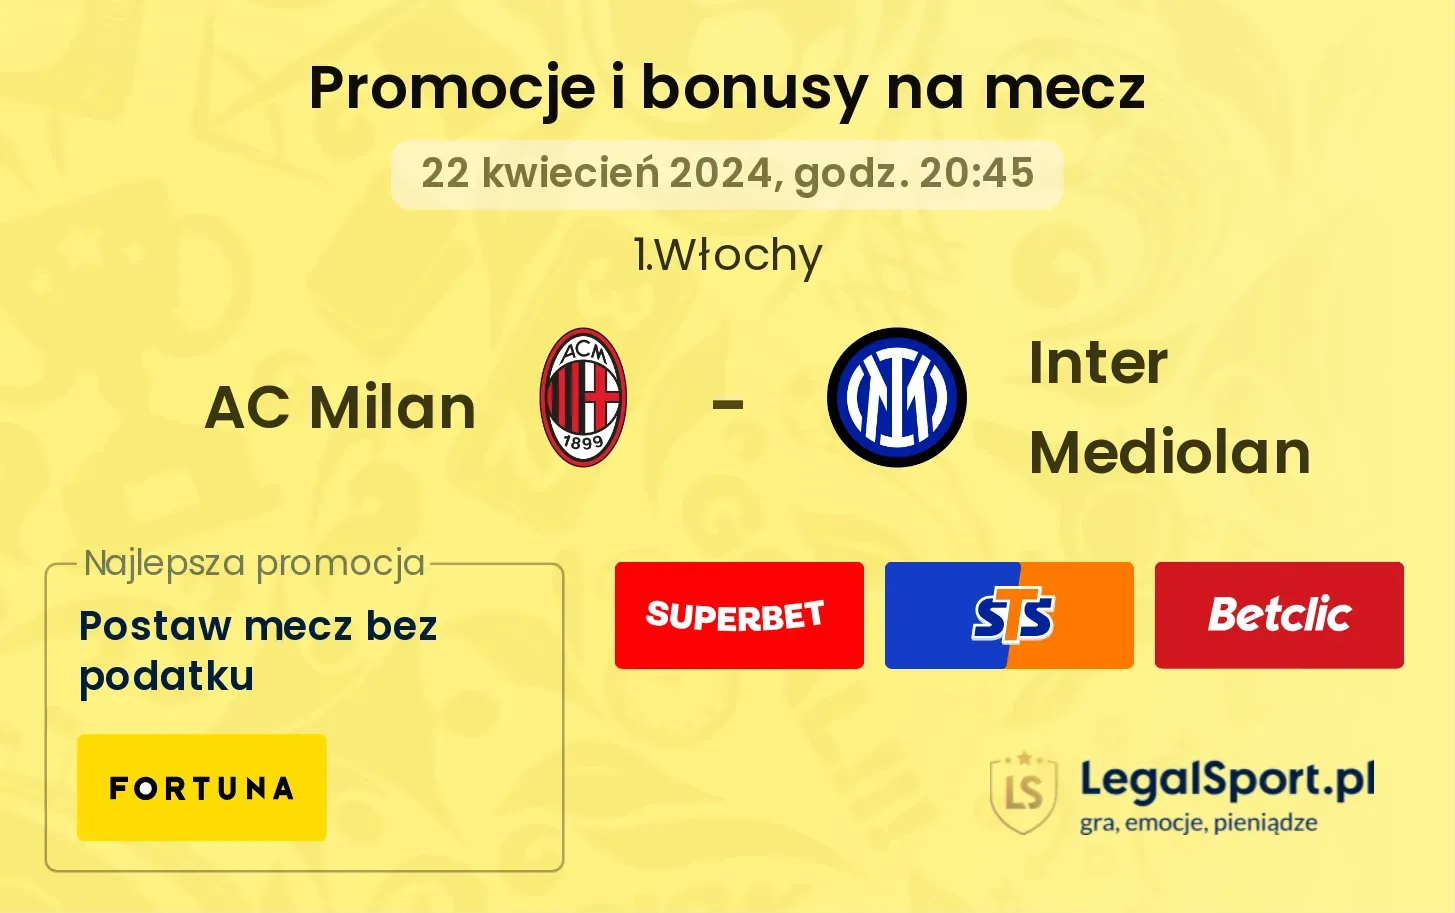 AC Milan - Inter Mediolan promocje bonusy na mecz